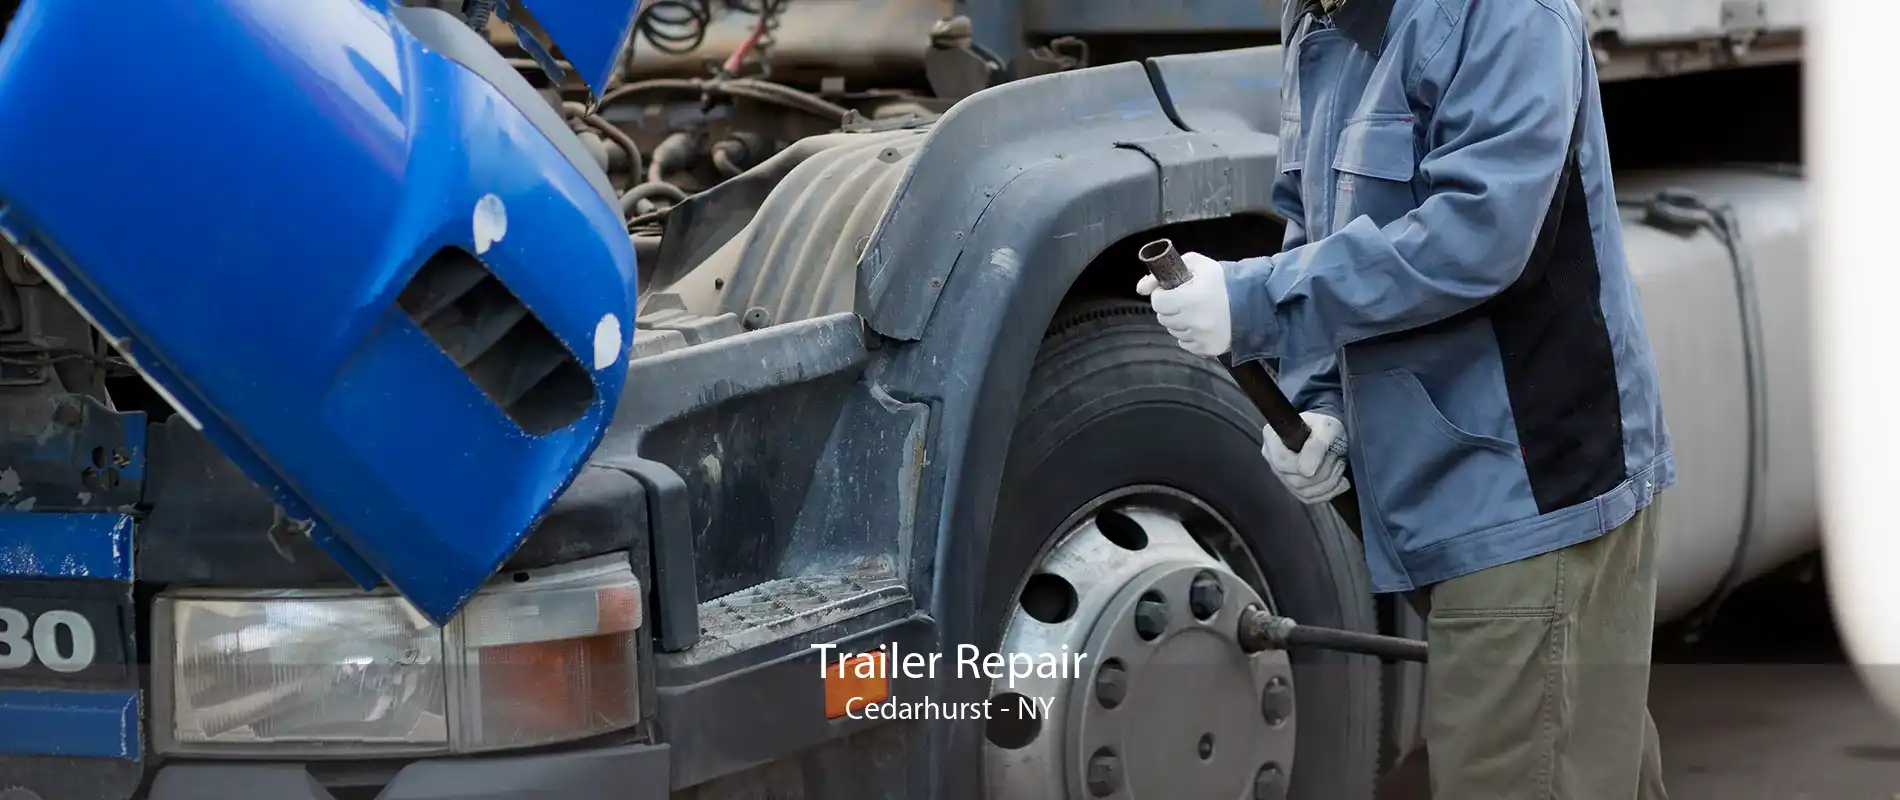 Trailer Repair Cedarhurst - NY